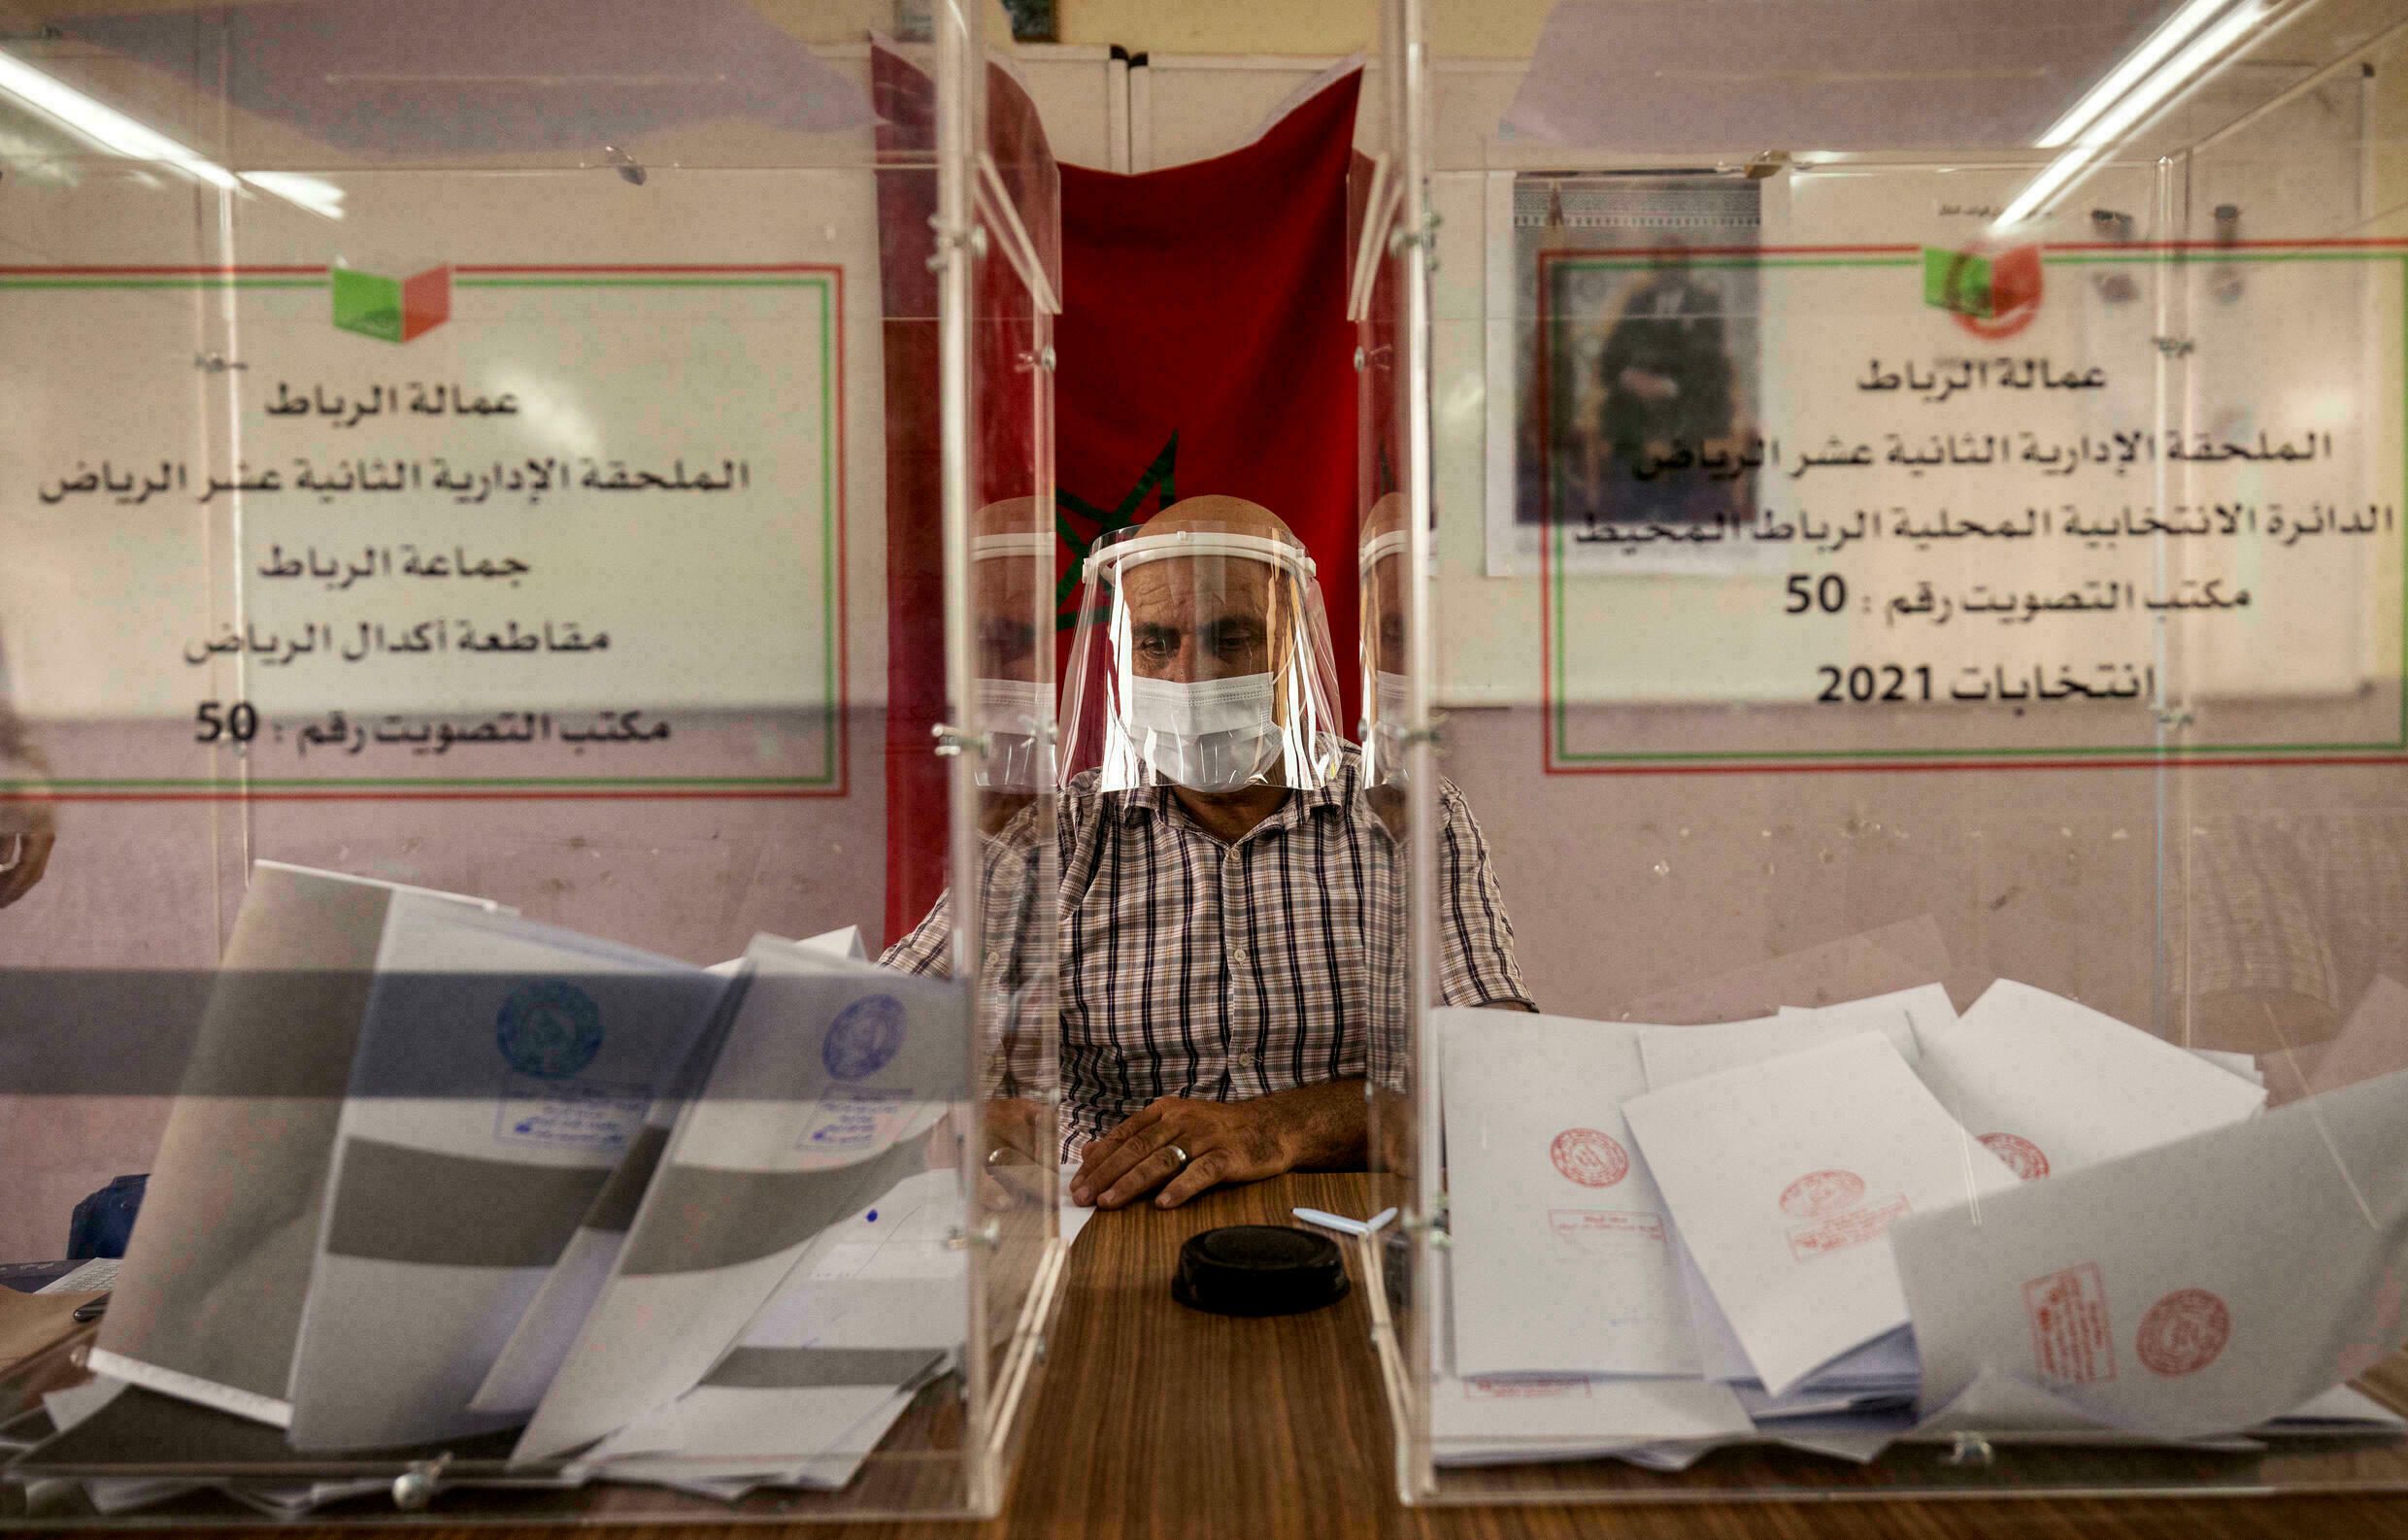 الطوسة : إنتخابات 8 شتنبر جعلت المغرب في قلب كل “الإهتمام والثناء”